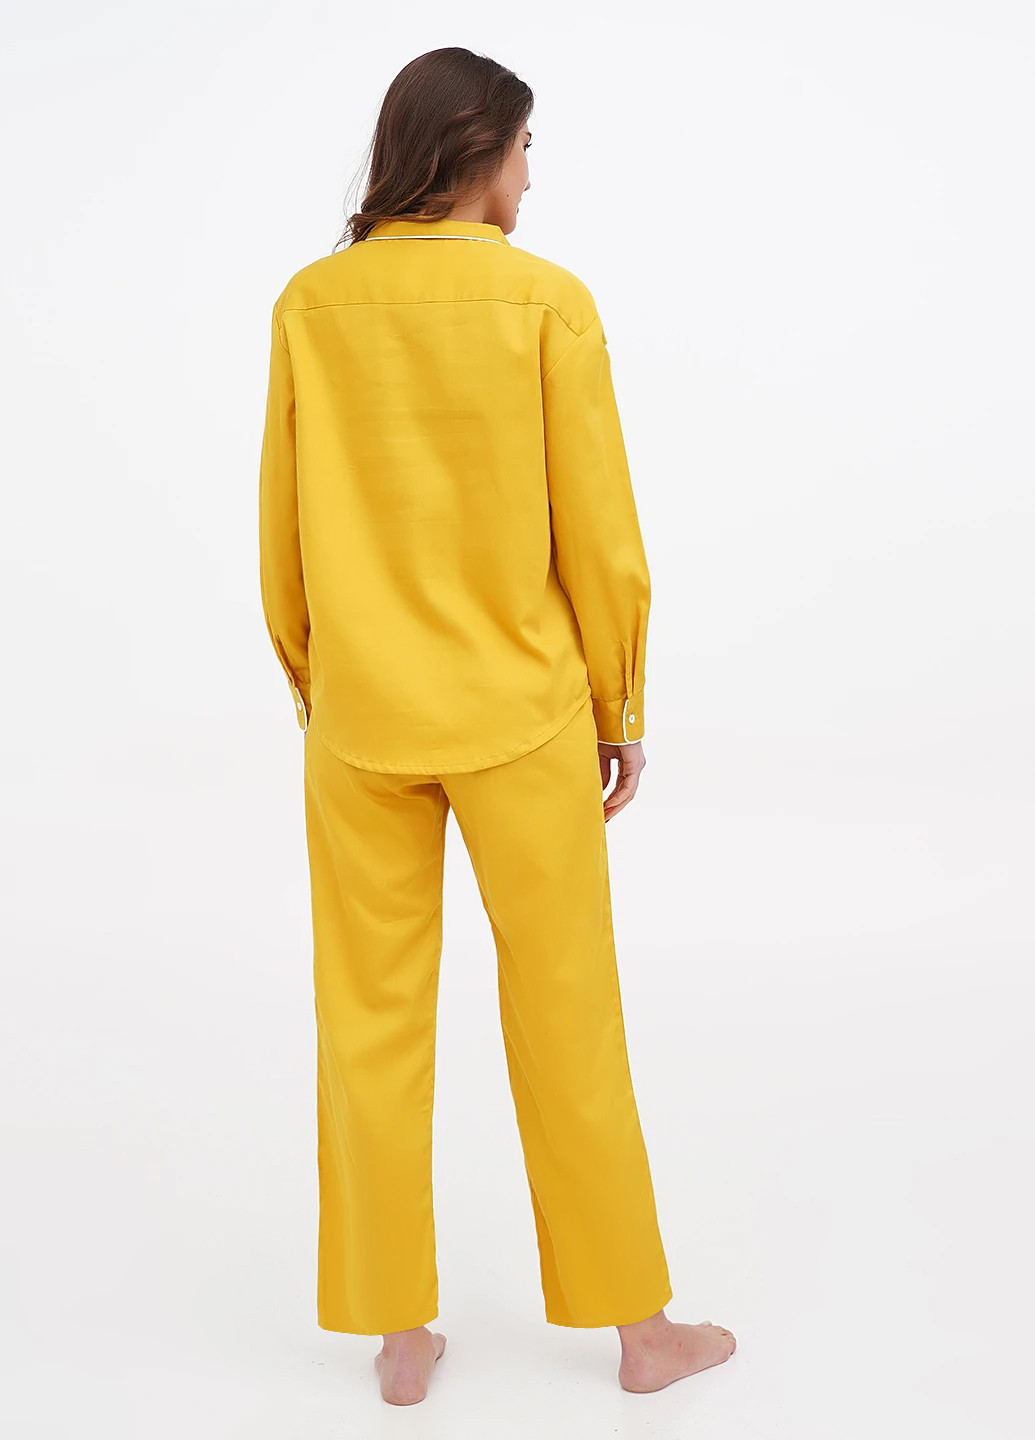 Желтая всесезон пижама (рубашка, брюки) рубашка + брюки MOONS